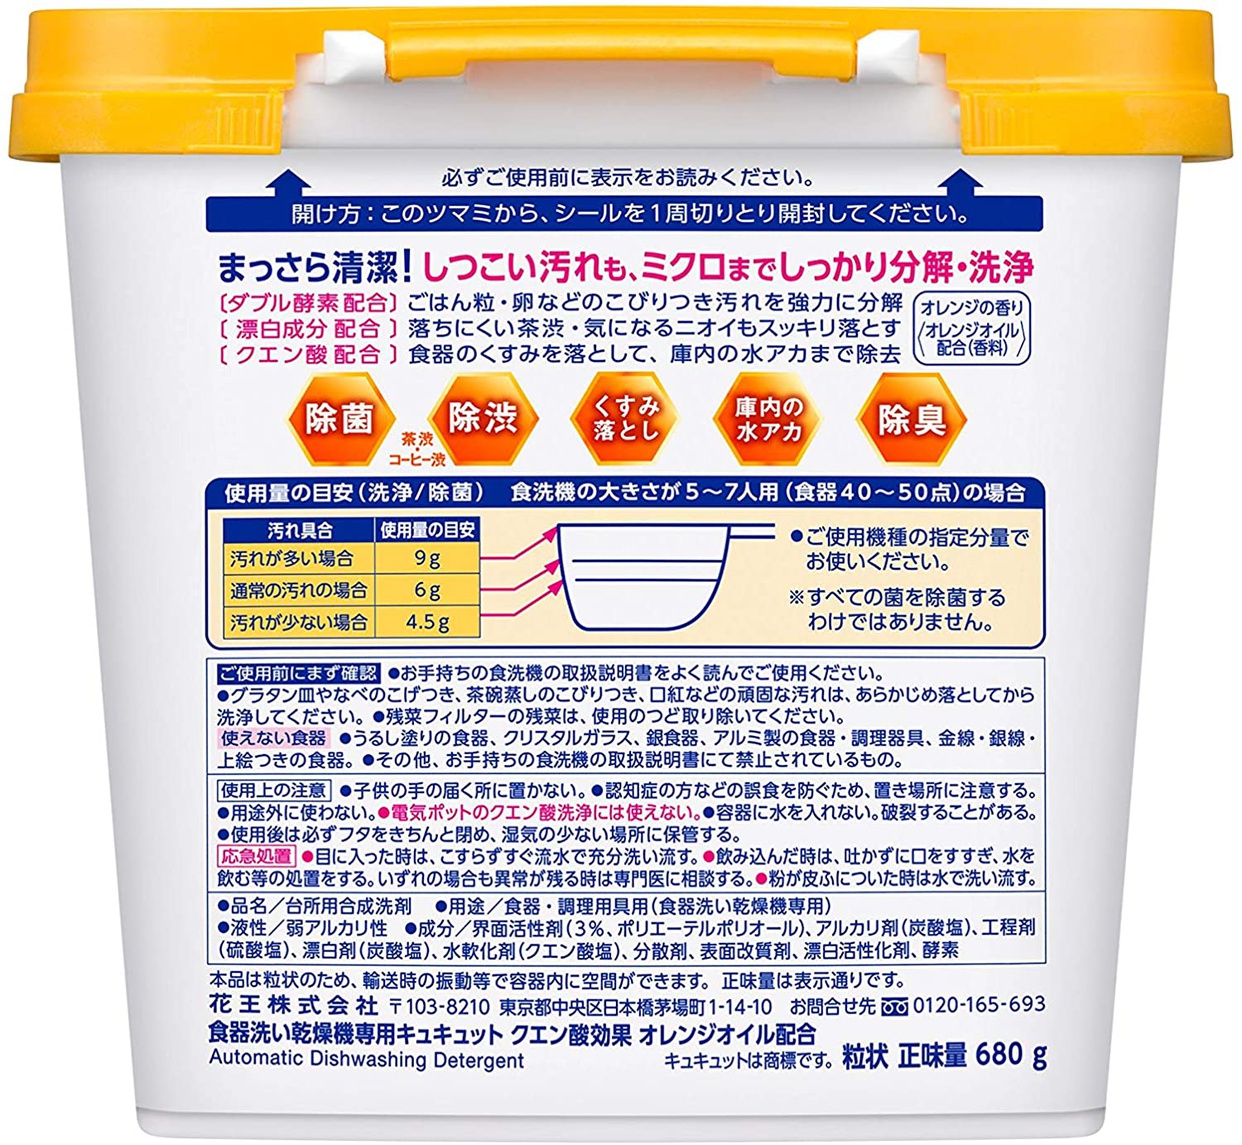 花王(kao) 食器洗い乾燥機専用キュキュット クエン酸効果 オレンジオイル配合の商品画像2 